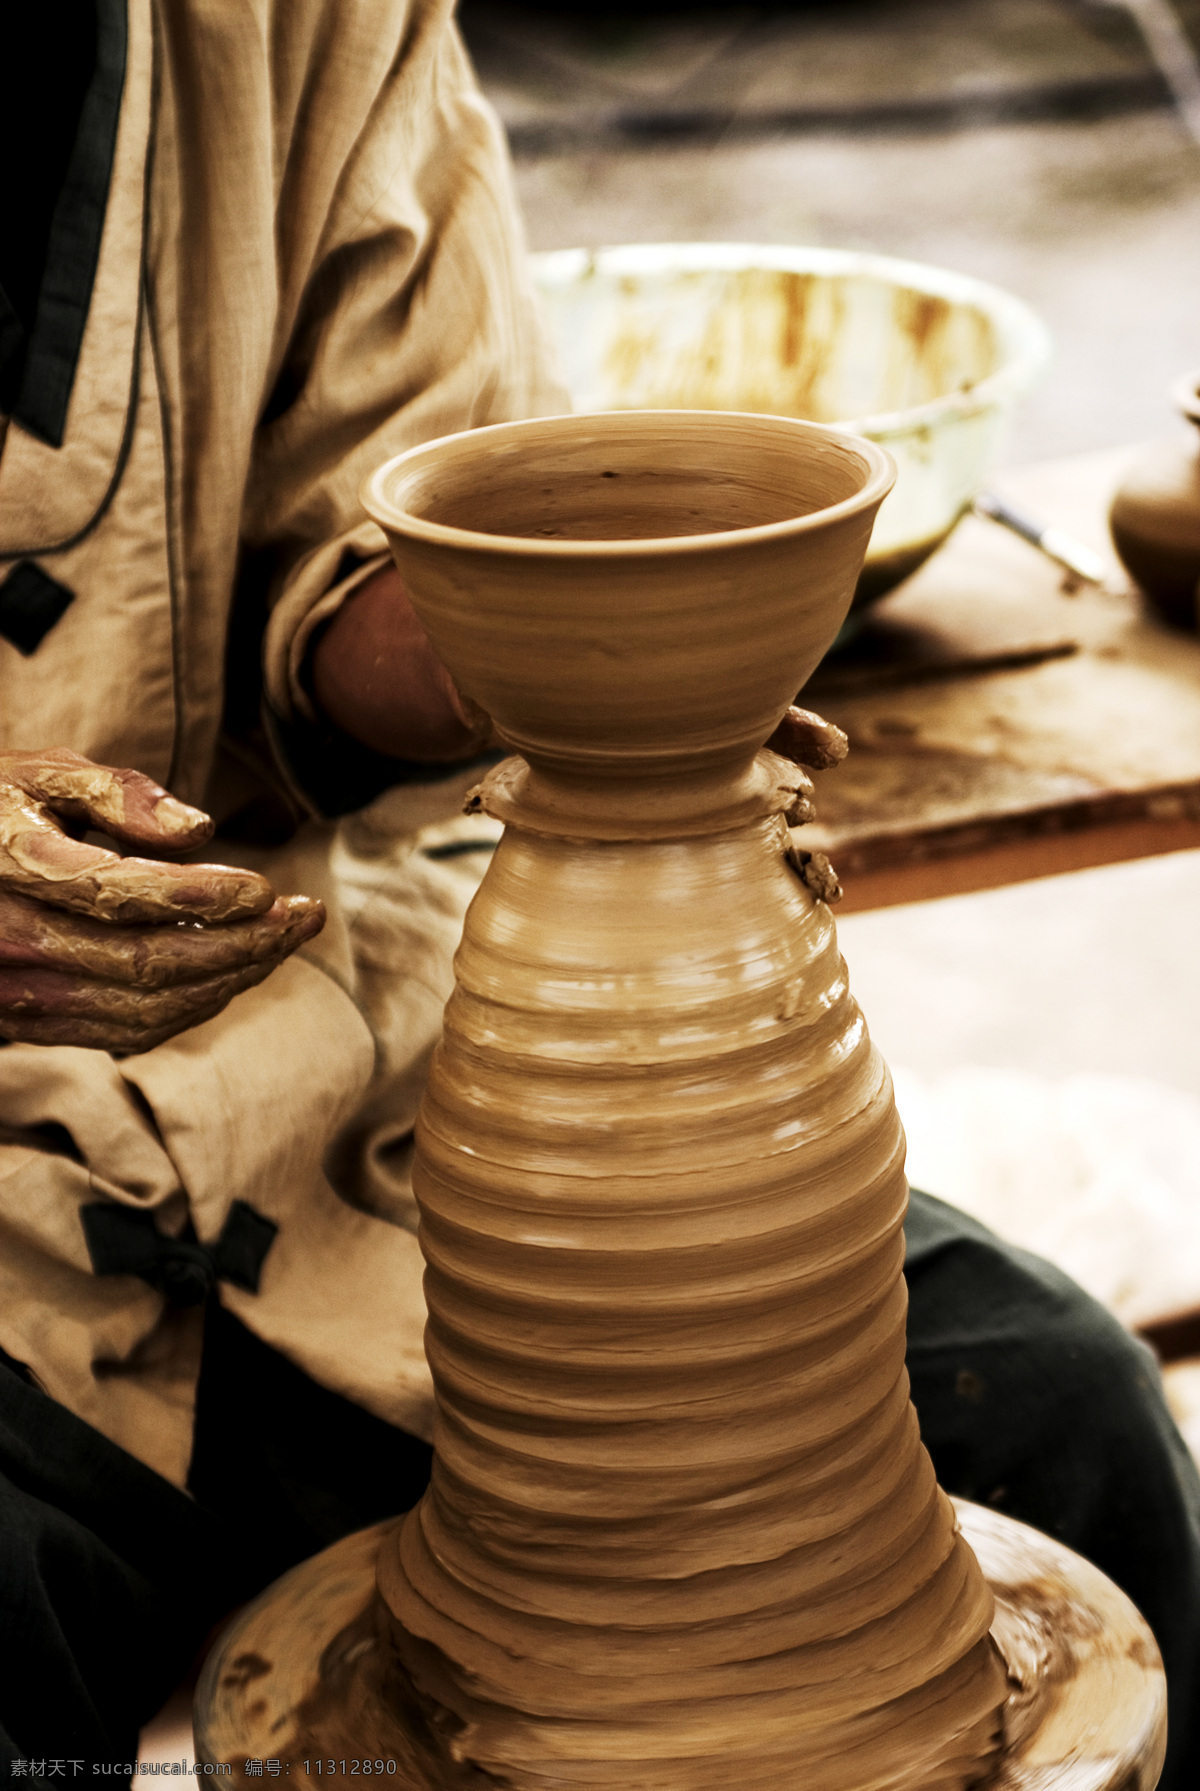 陶艺 制作陶瓷 陶瓷 工艺 陶器 瓷器 手工艺 传统文化 文化艺术